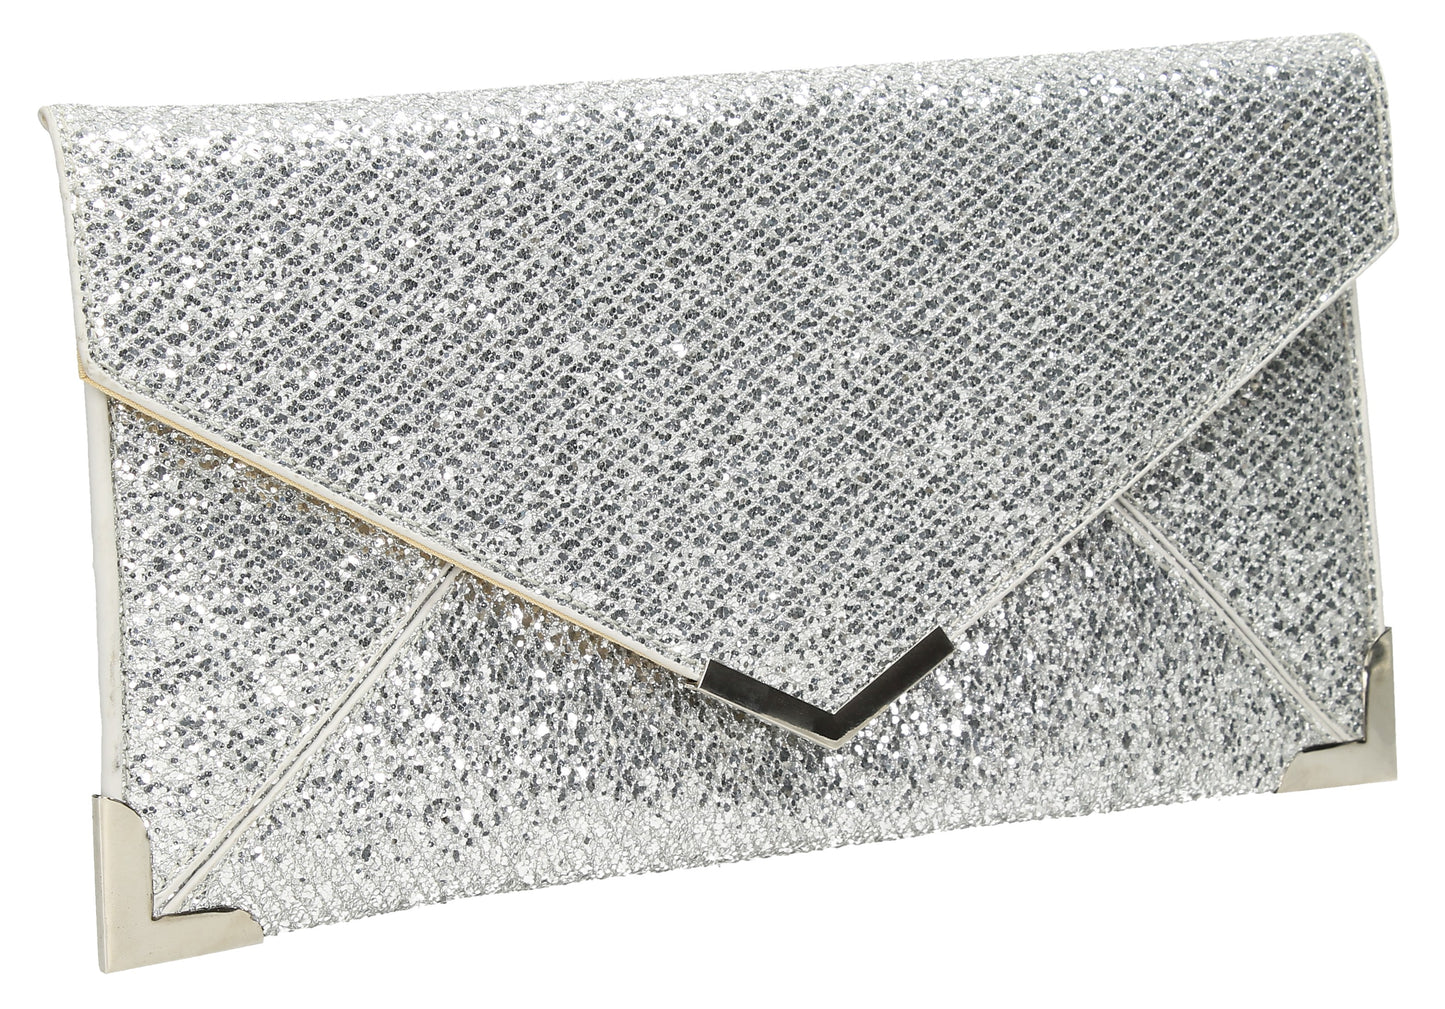 SWANKYSWANS Fallabella Glitter Clutch Bag Silver Cute Cheap Clutch Bag For Weddings School and Work